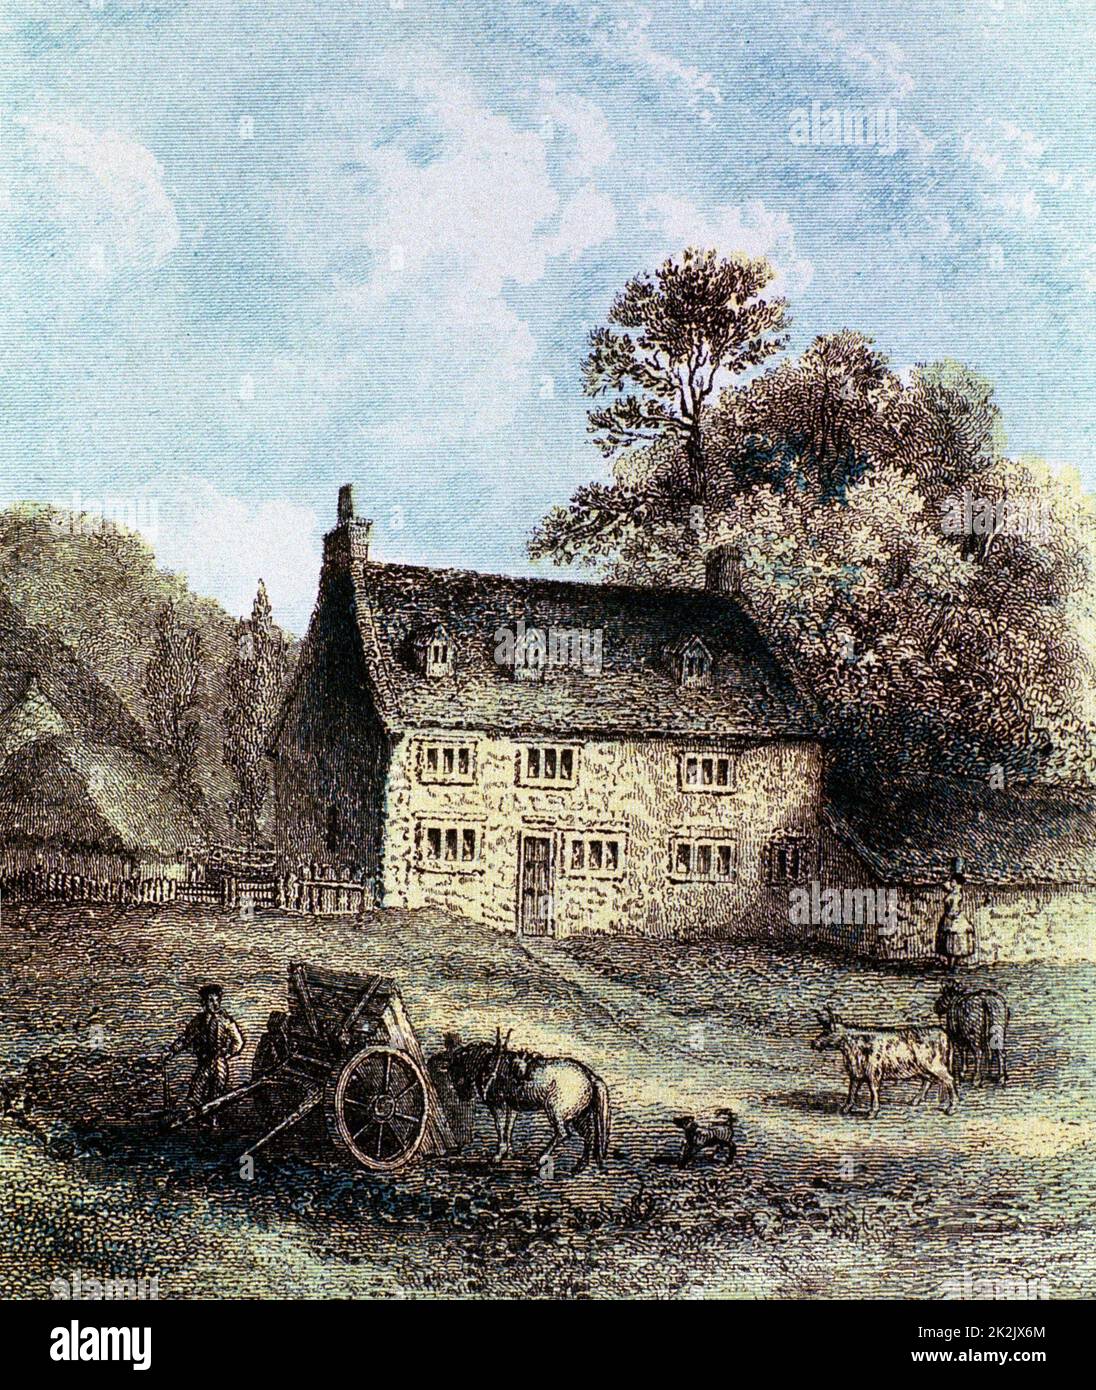 Isaac Newton (1642-1727) scientifique et mathématicien anglais. Woolsthorpe Manor près de Grantham, Lincolnshire, lieu de naissance de Newton. Gravure en couleur 1859 Banque D'Images